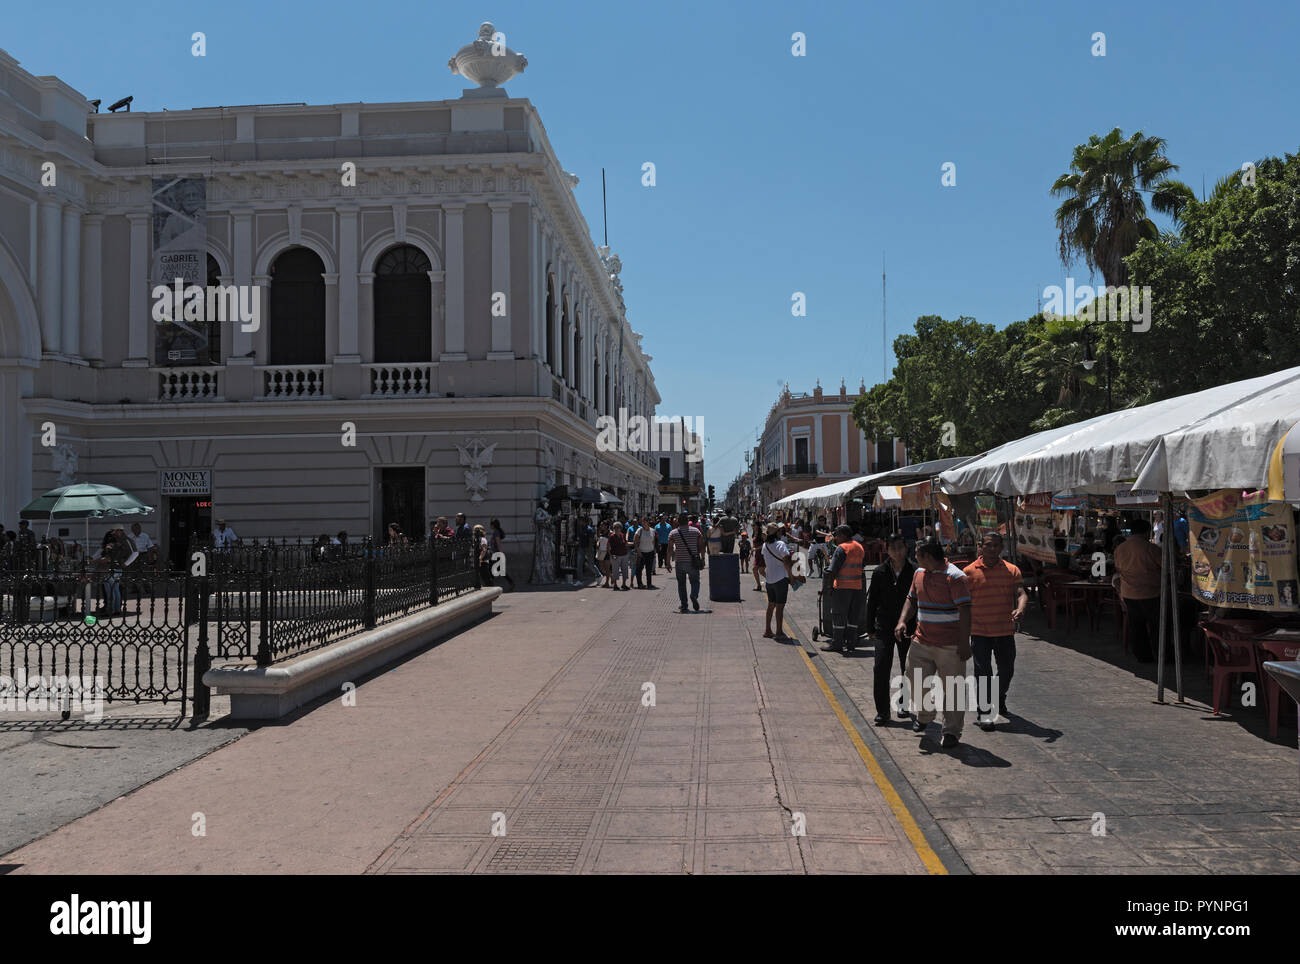 La cale au festival de rue dans la plaza de la Independencia le merida en domingo merida le dimanche. Banque D'Images